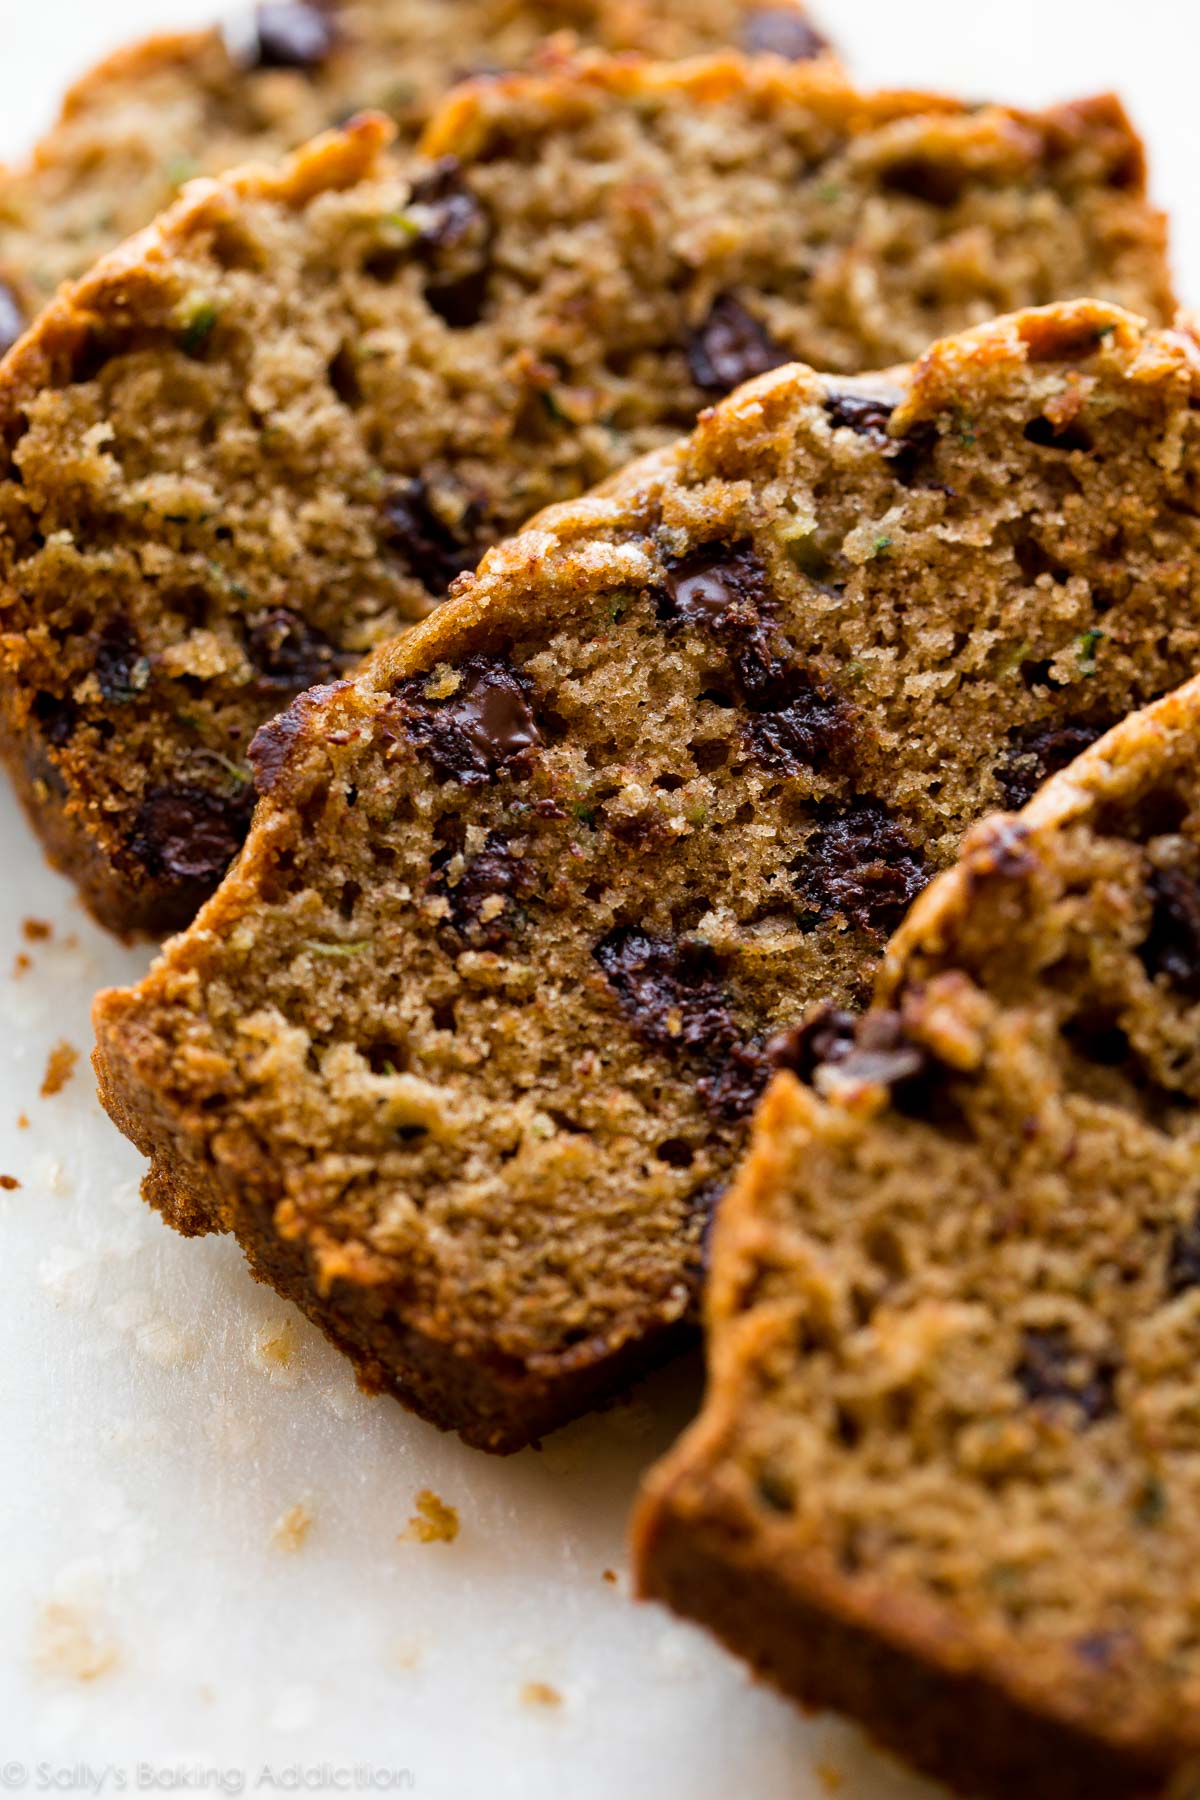 Voici une recette primée de pain aux courgettes + muffins au pain aux courgettes! Avec la cassonade, la vanille et la cannelle, vous ne pouvez pas goûter les courgettes! Recette sur sallysbakingaddiction.com